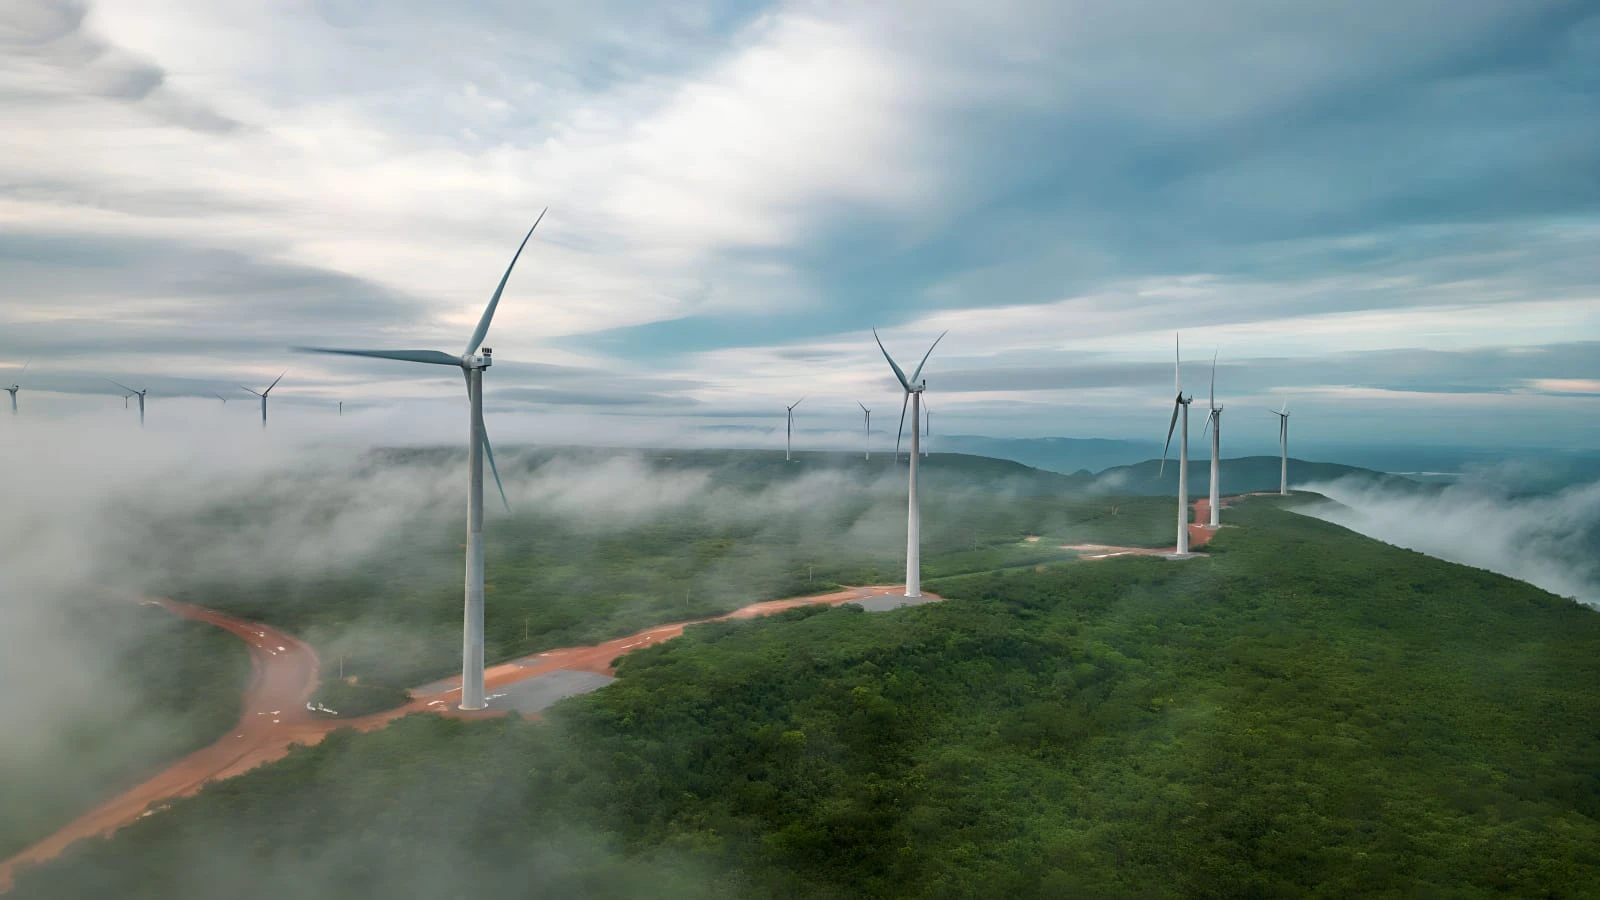 WEG fecha acordos de R$ 1,4 bilhão para autoprodução de energia eólica. Na imagem: Turbinas eólicas onshore no parque eólico Anemus (138,6 MW), com 33 aerogeradores WEG, em Currais Novos, no RN (Foto: Divulgação)